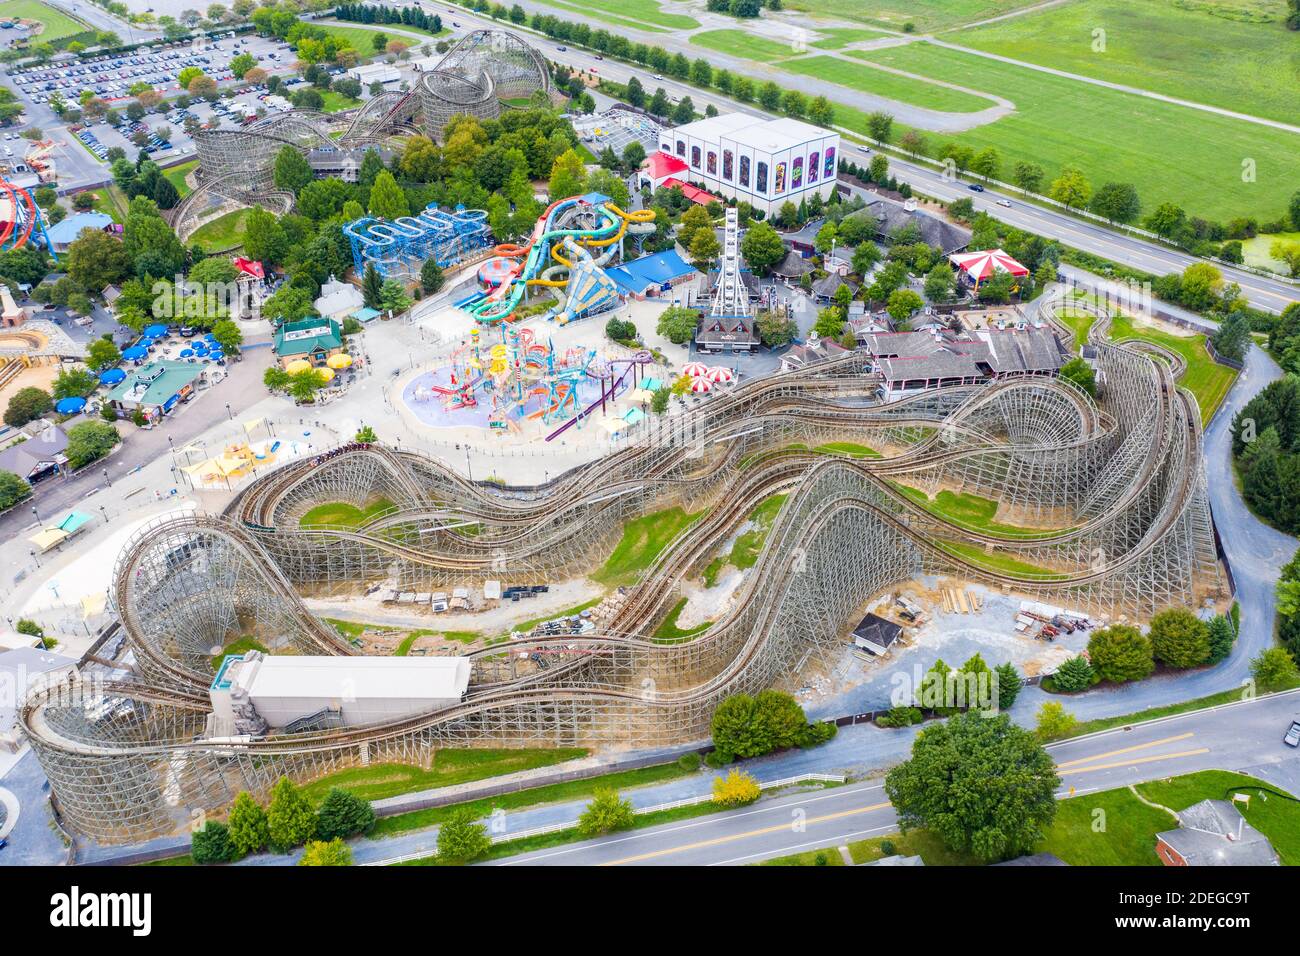 Vue aérienne de Great Bear Roller Coaster, parc d'attractions Hersheypark, Hershey, PA, États-Unis Banque D'Images